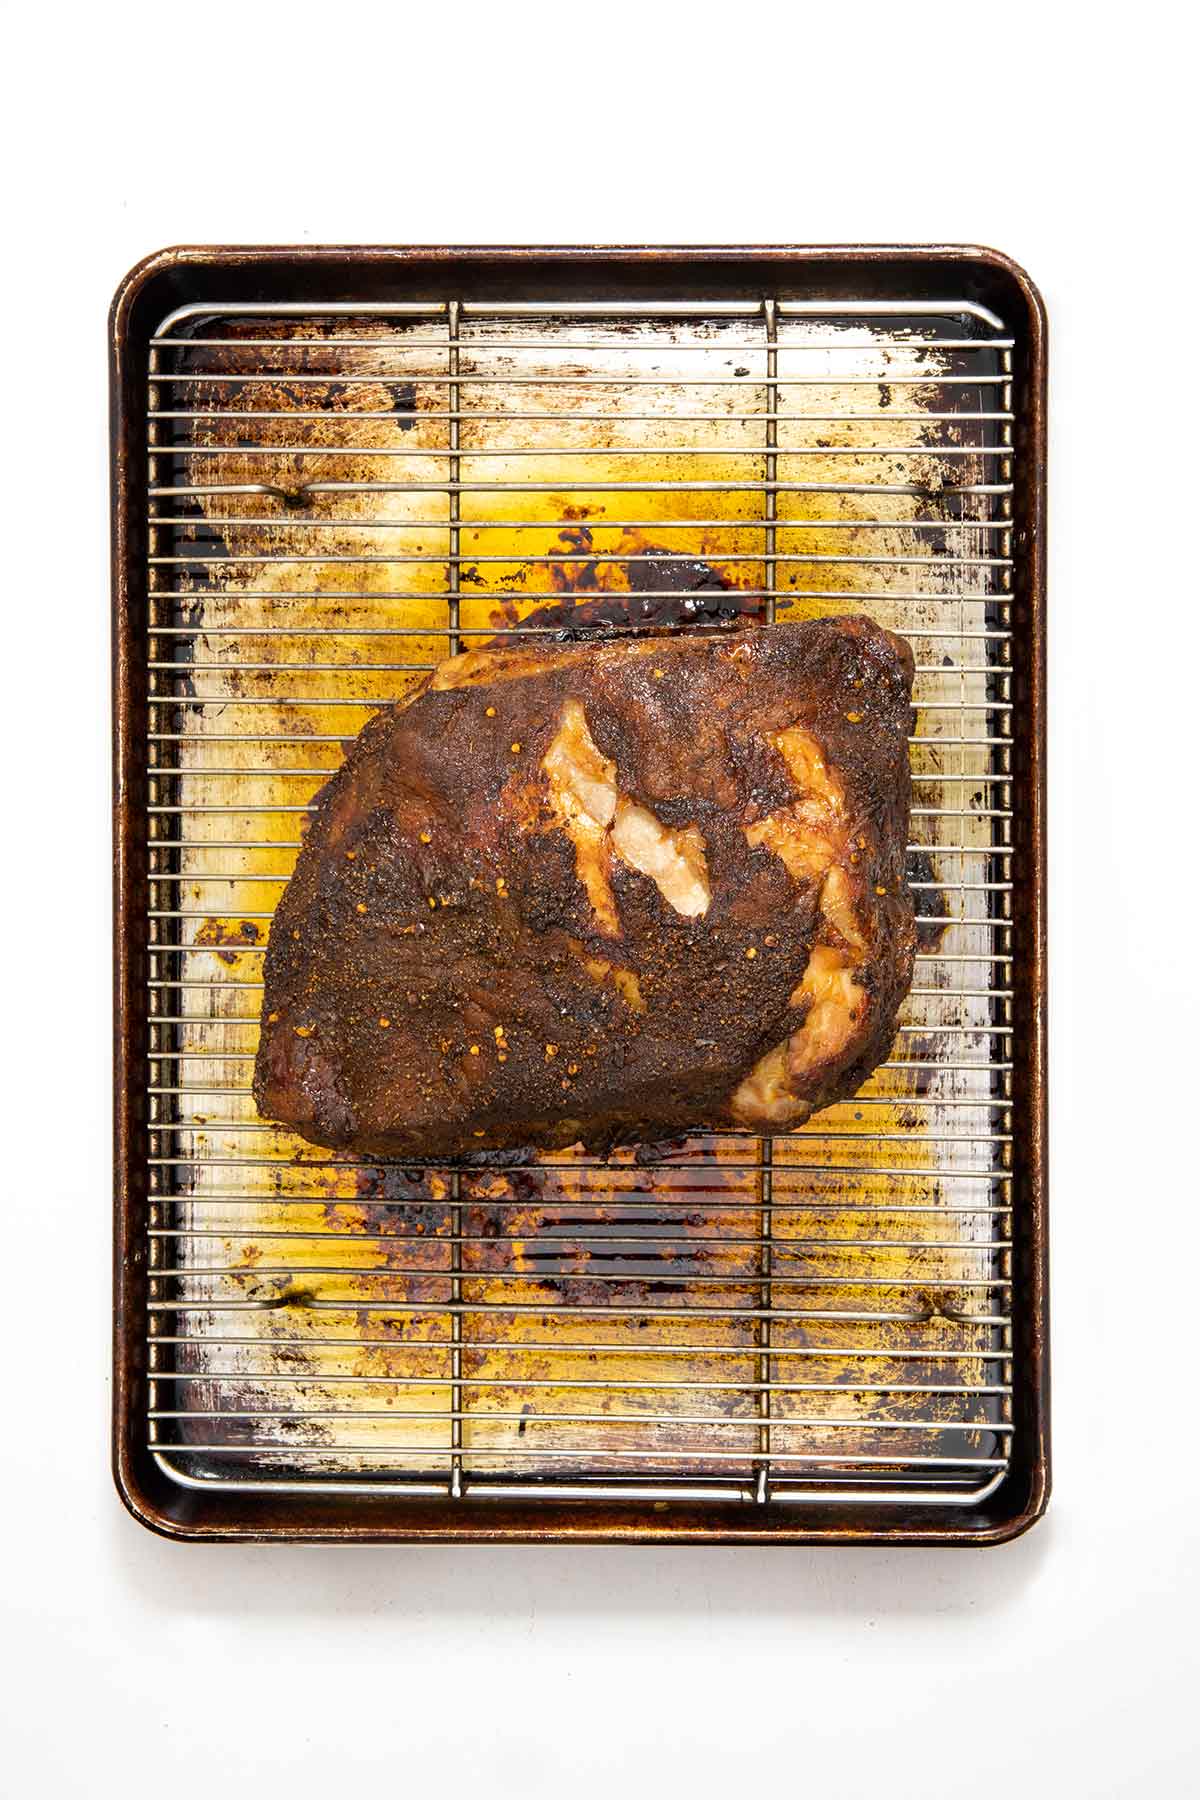 A cooked roast pork butt on a rack over a baking sheet.